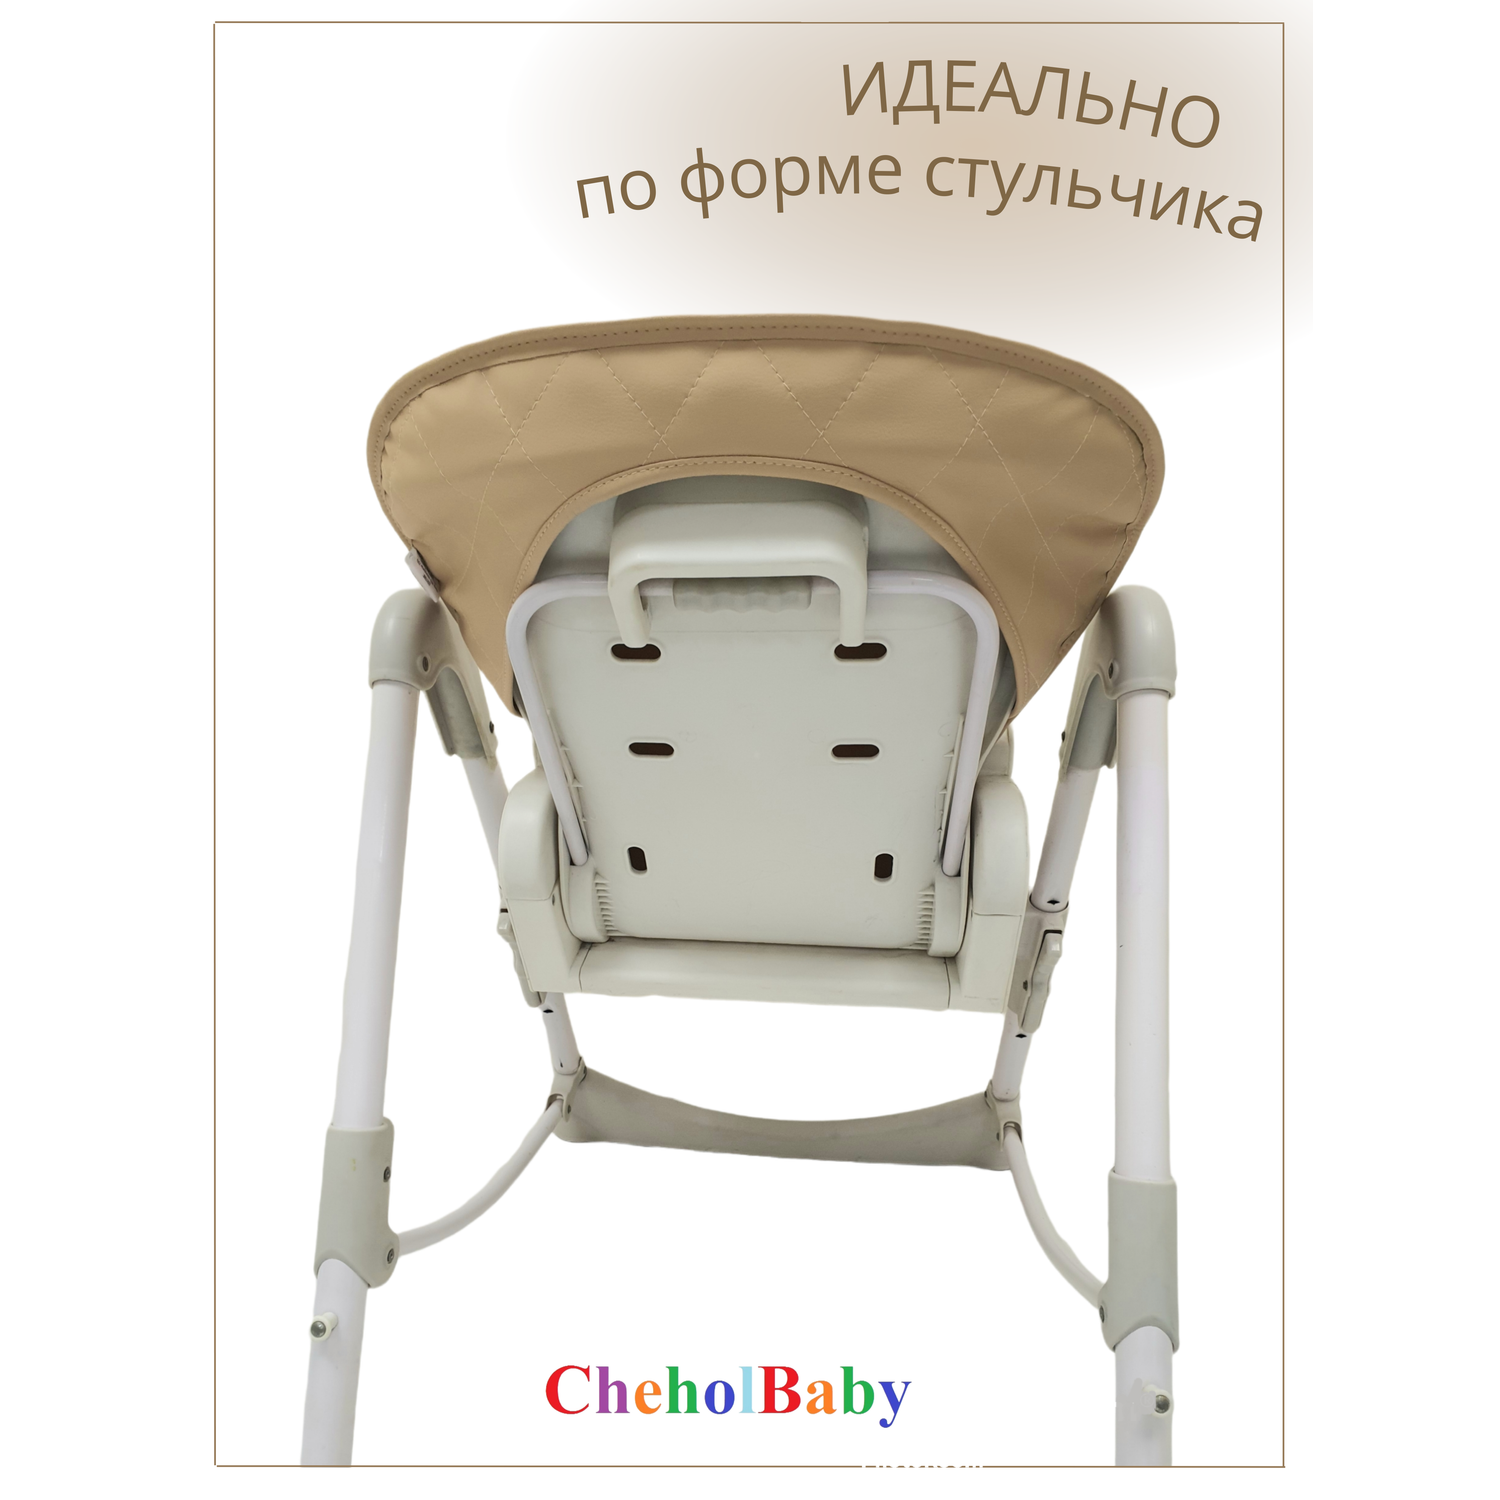 Чехол на детский стульчик CheholBaby для кормления - фото 2